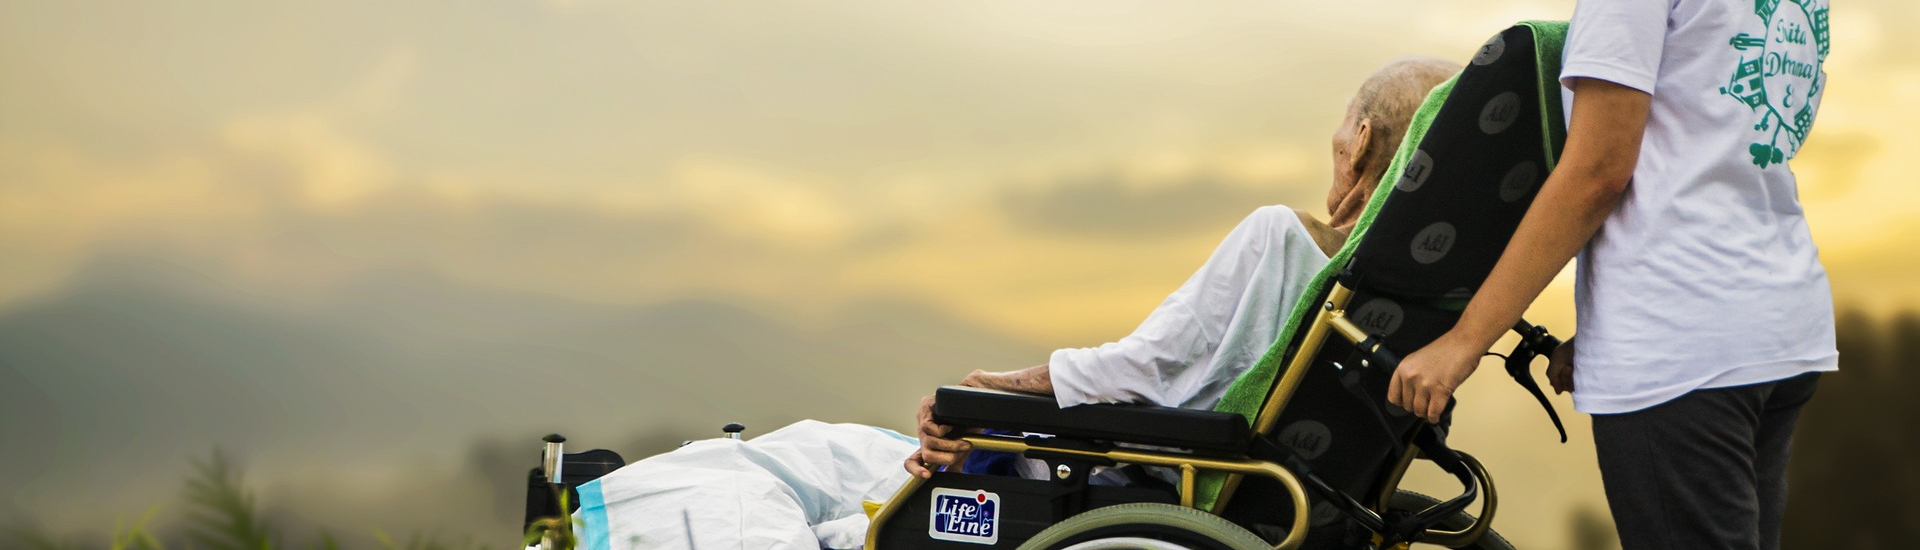 Personne handicapée âgée dans son fauteuil face au ciel nuageux et soleil couchant